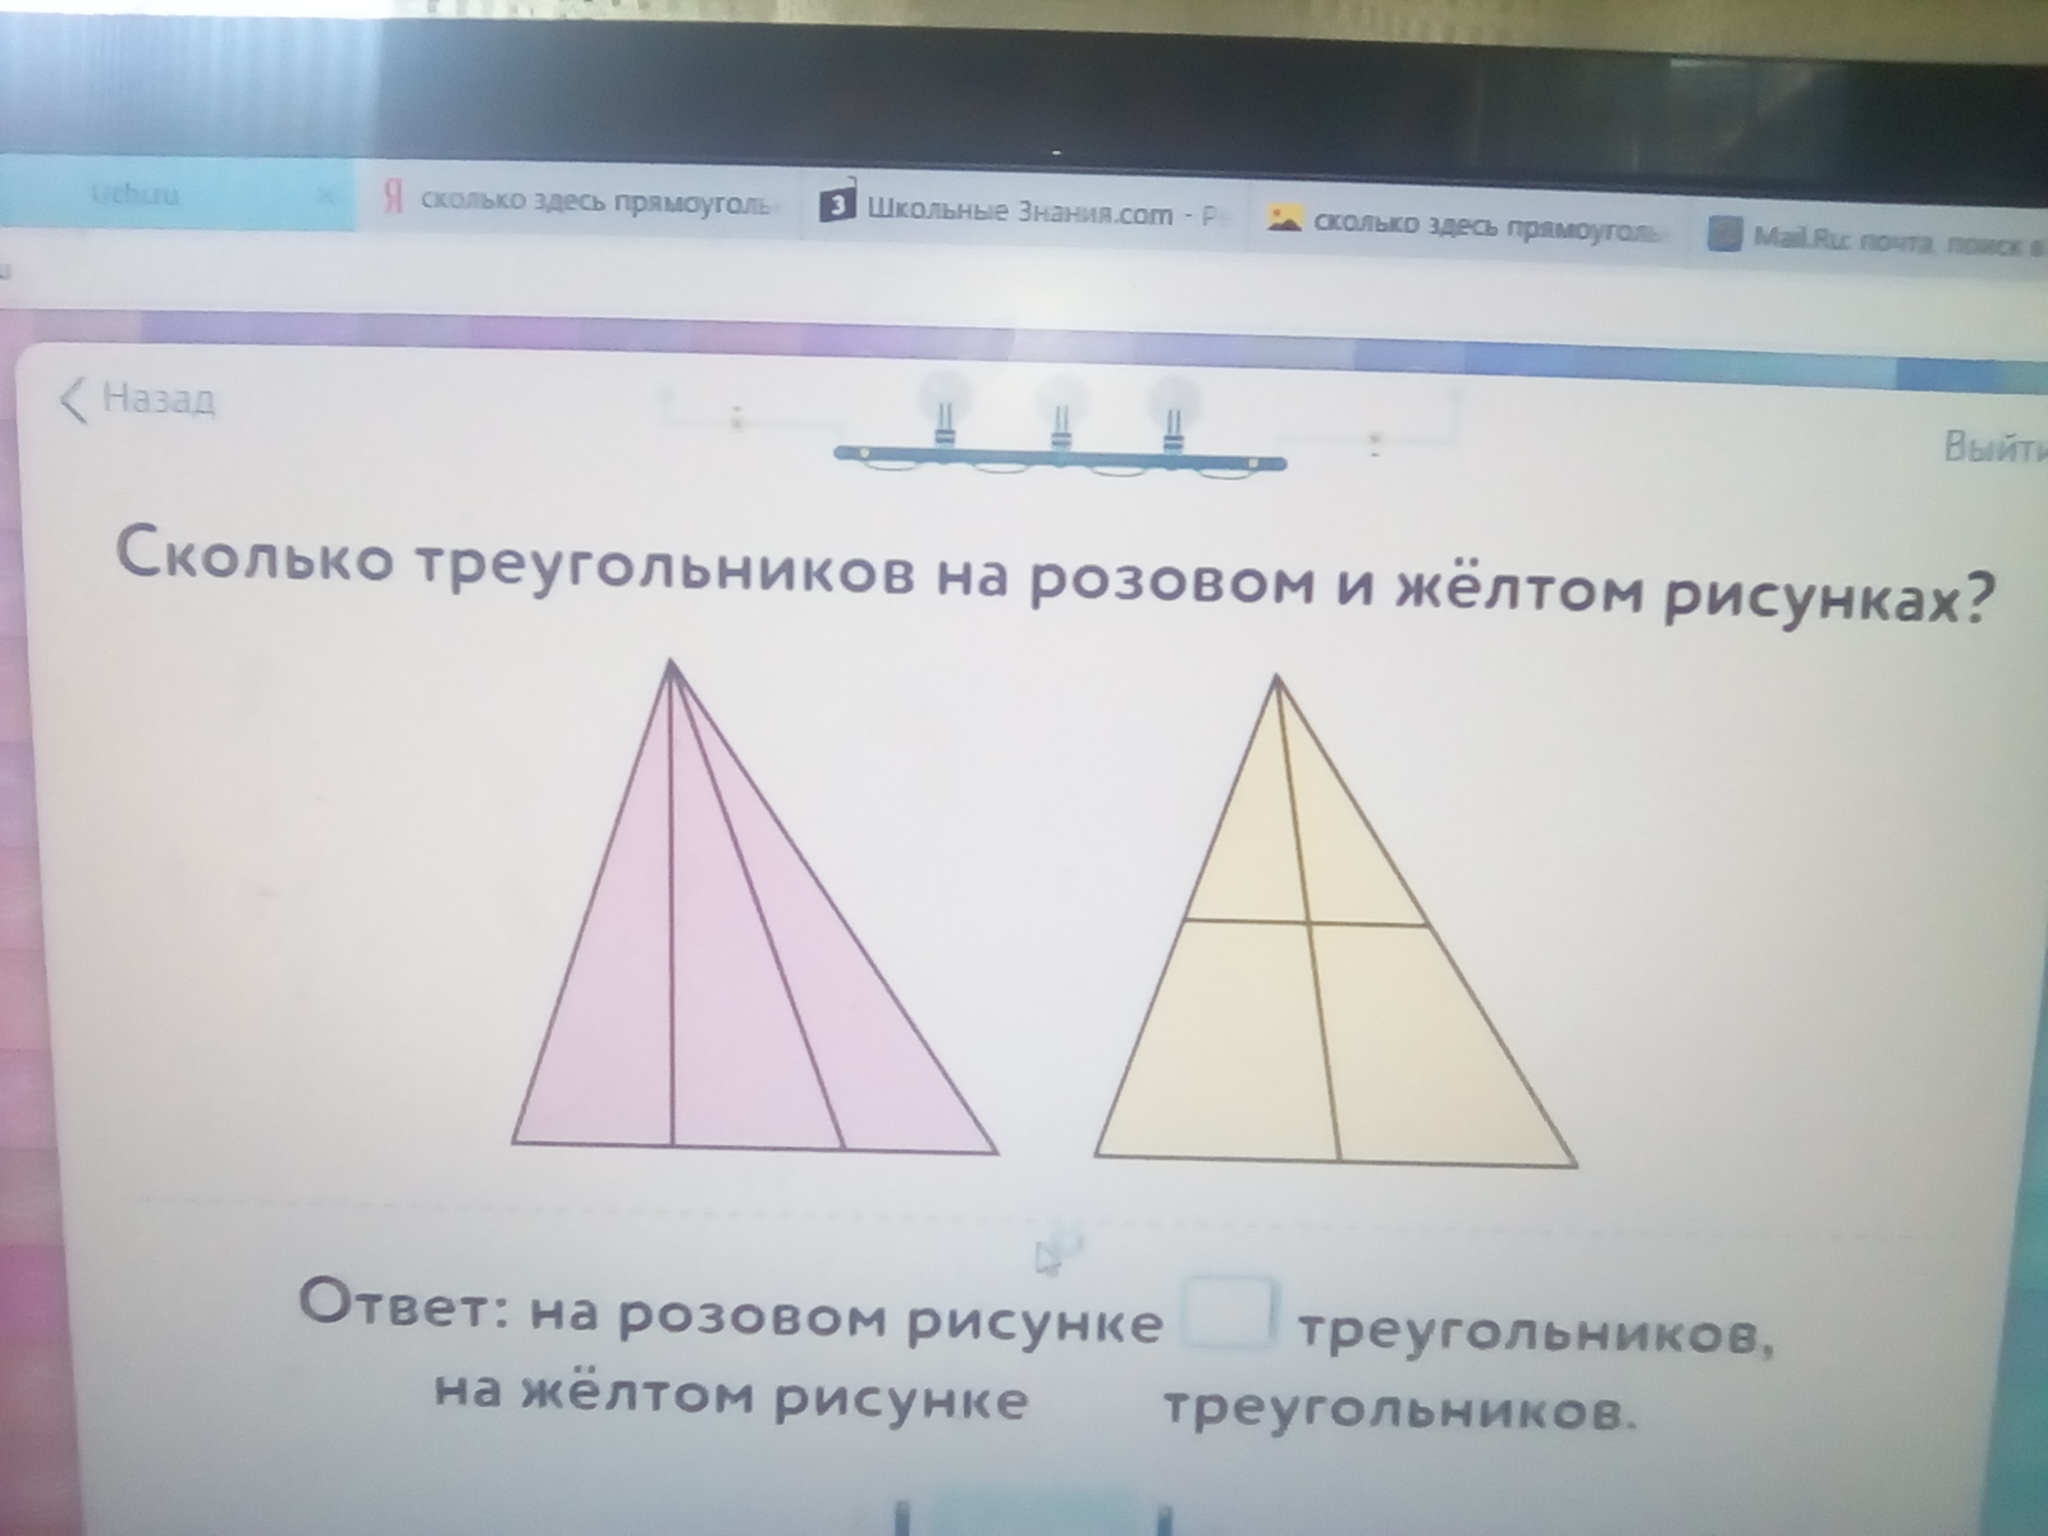 На розовом рисунке треугольников